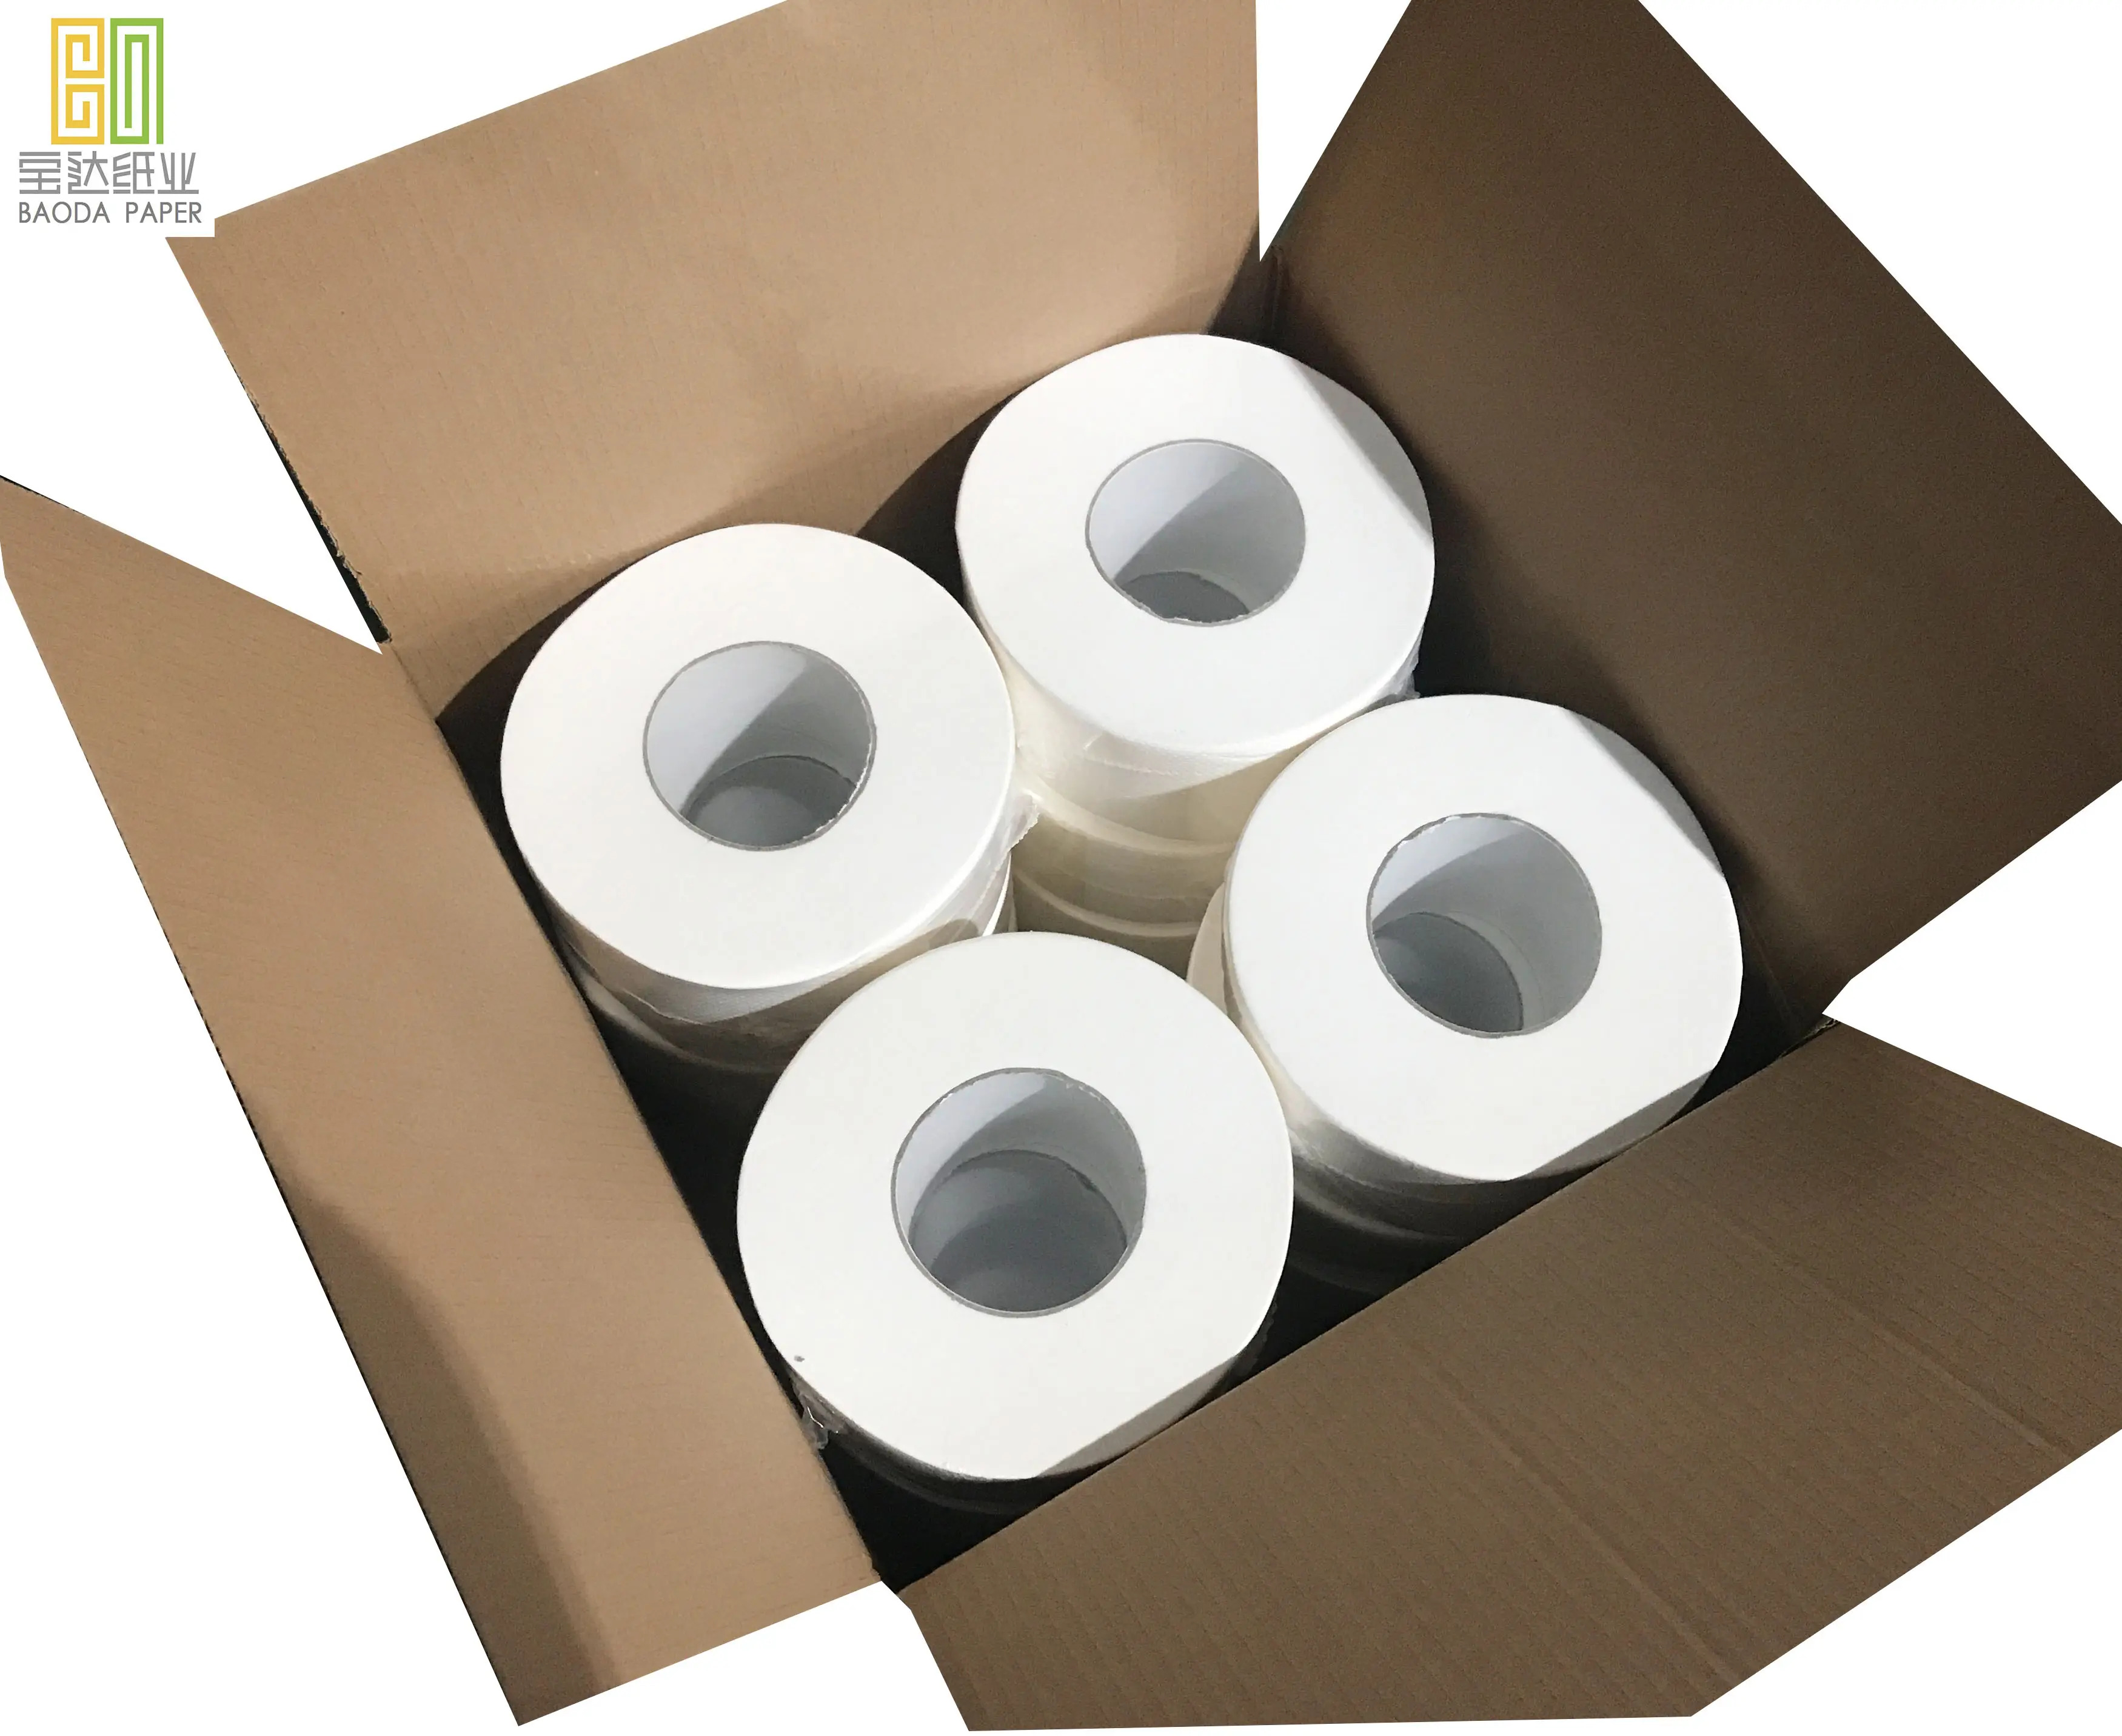 Véritable Meilleur prix grossiste Le plus récent papier de soie de haute qualité rouleau jumbo matière première de dinde pour la fabrication de papier toilette